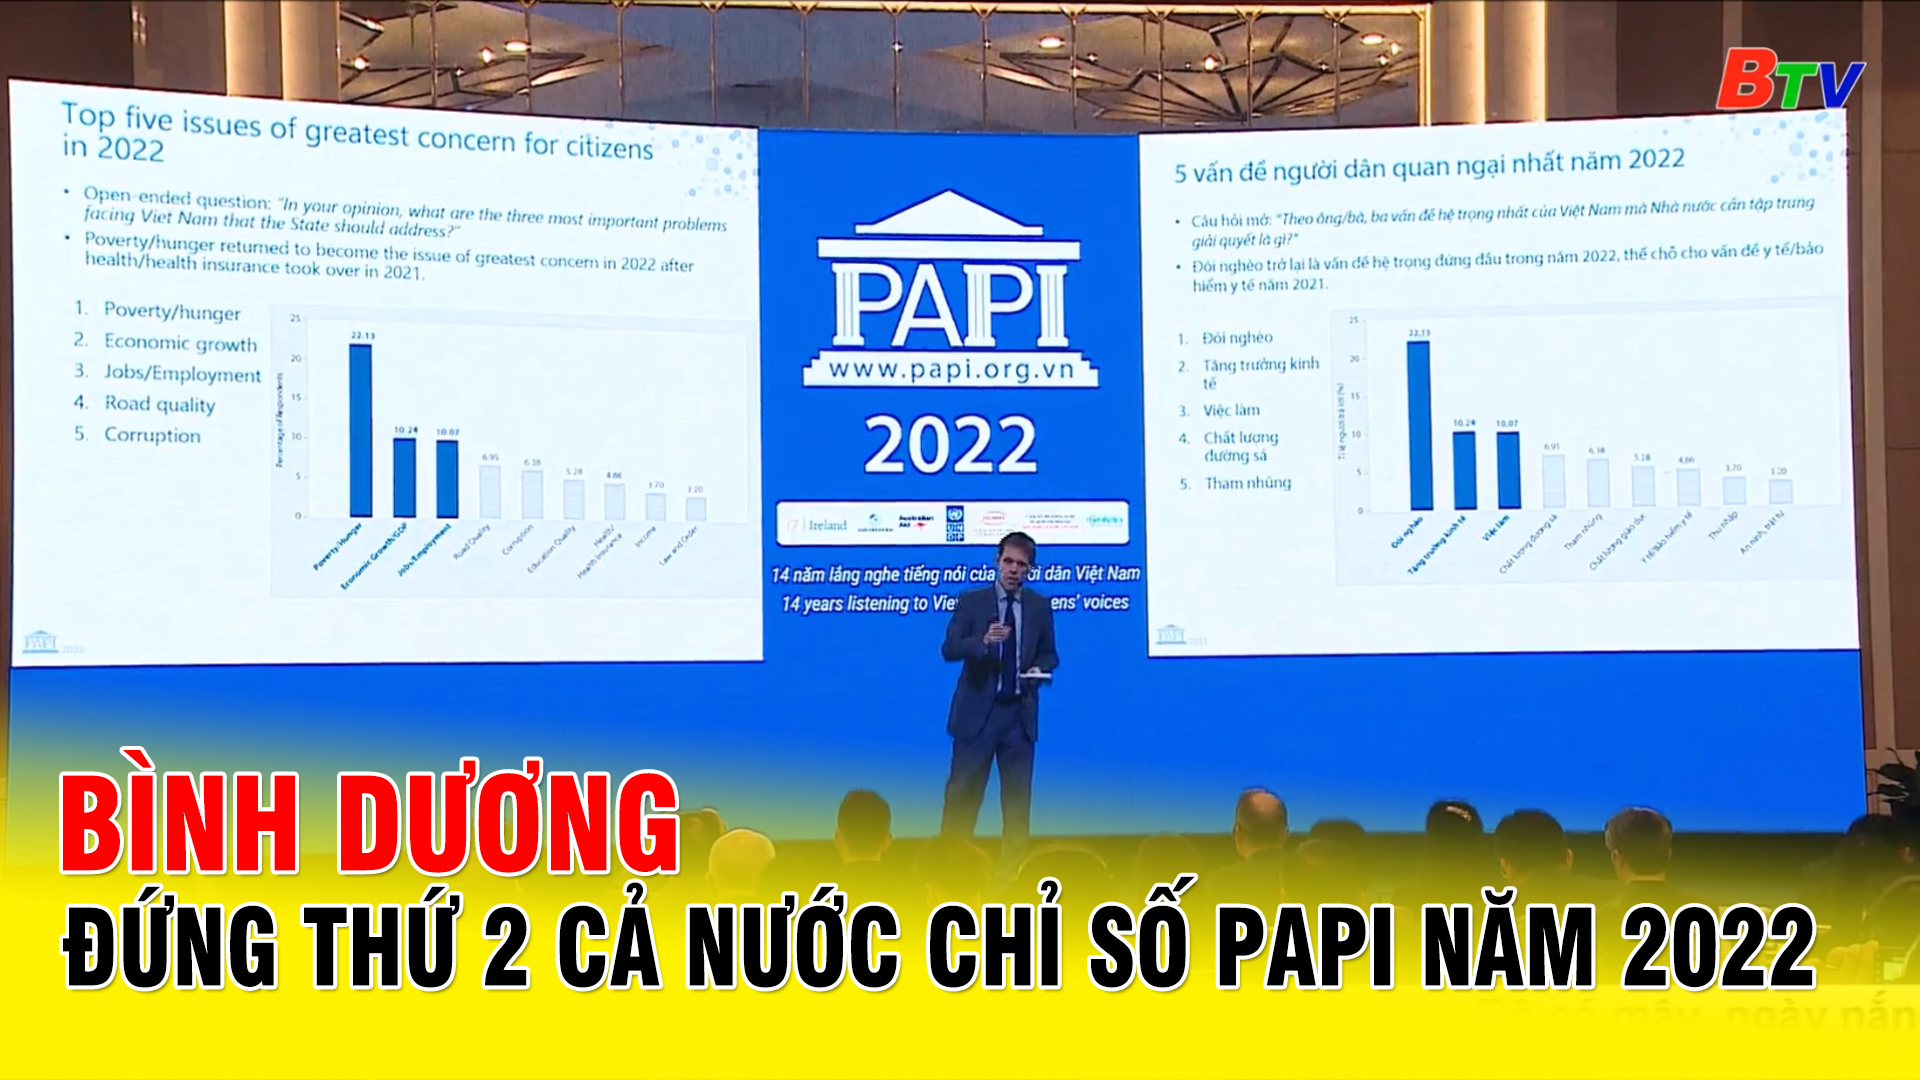 Bình Dương đứng thứ 2 cả nước chỉ số PAPI năm 2022